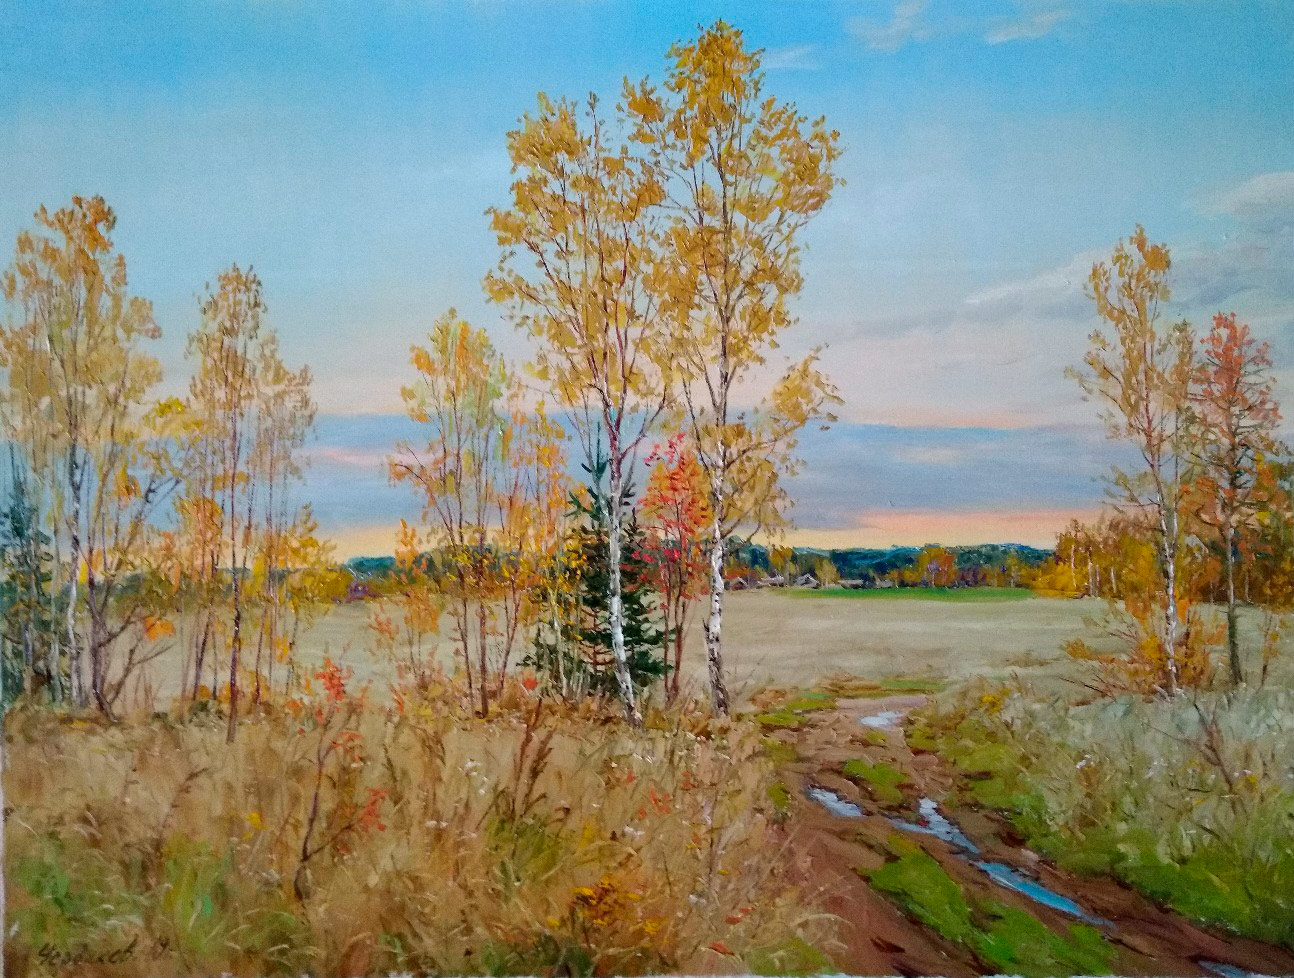 In the Middle of the Autumn - 1, Vyacheslav Cherdakov, 买画 油